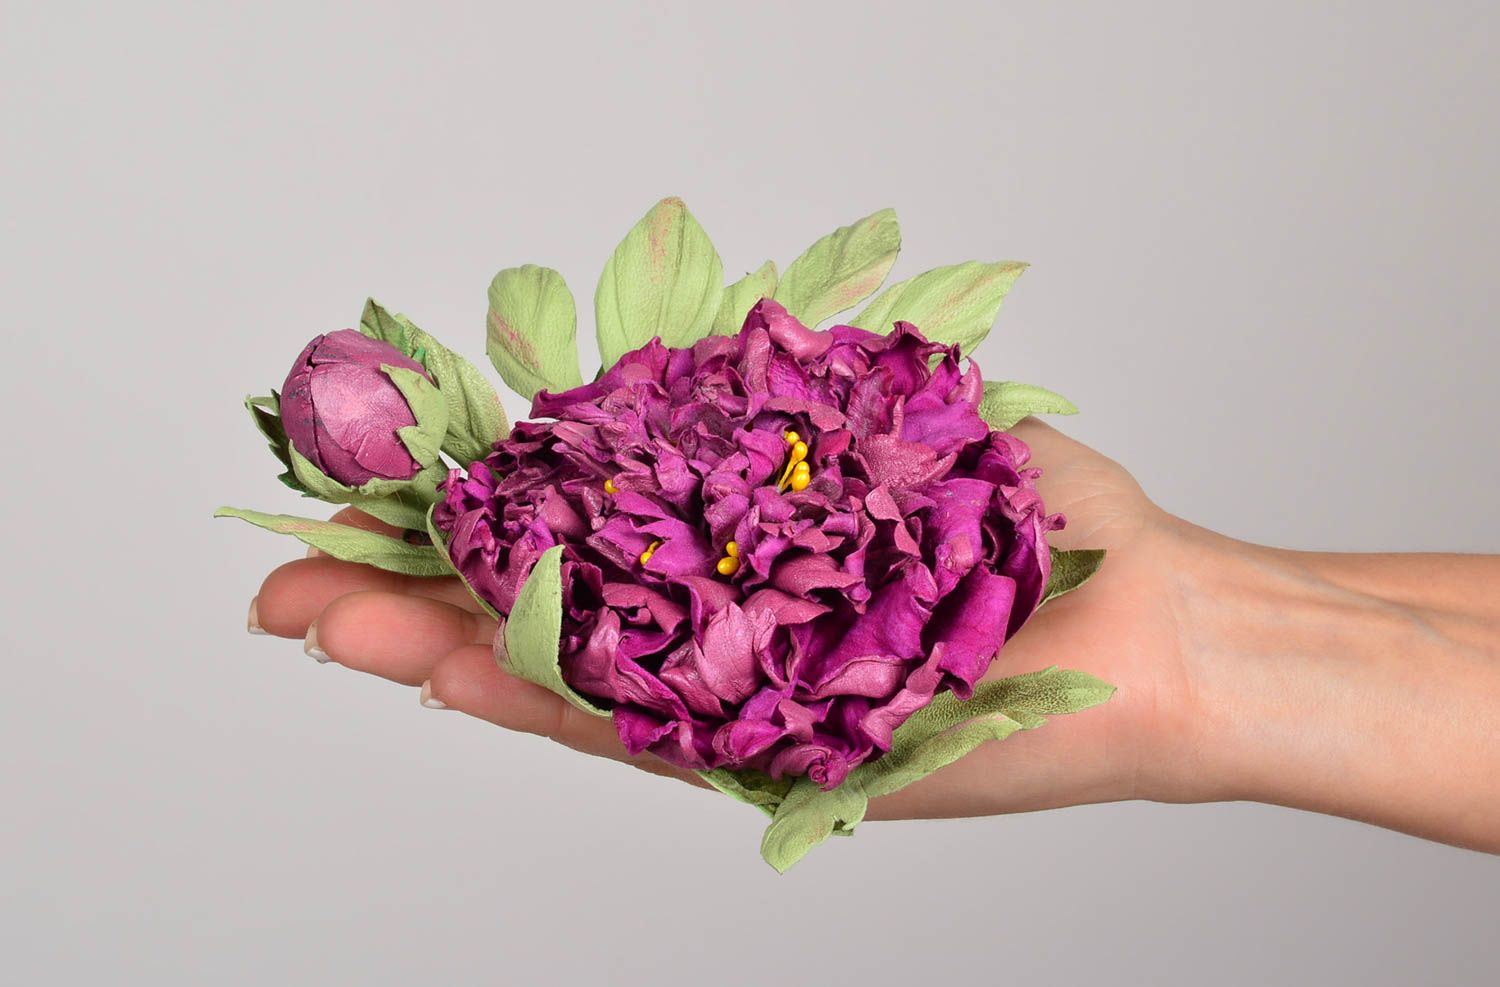 Авторская бижутерия хэнд мэйд красивая брошь фиолетовый цветок брошь из кожи фото 5